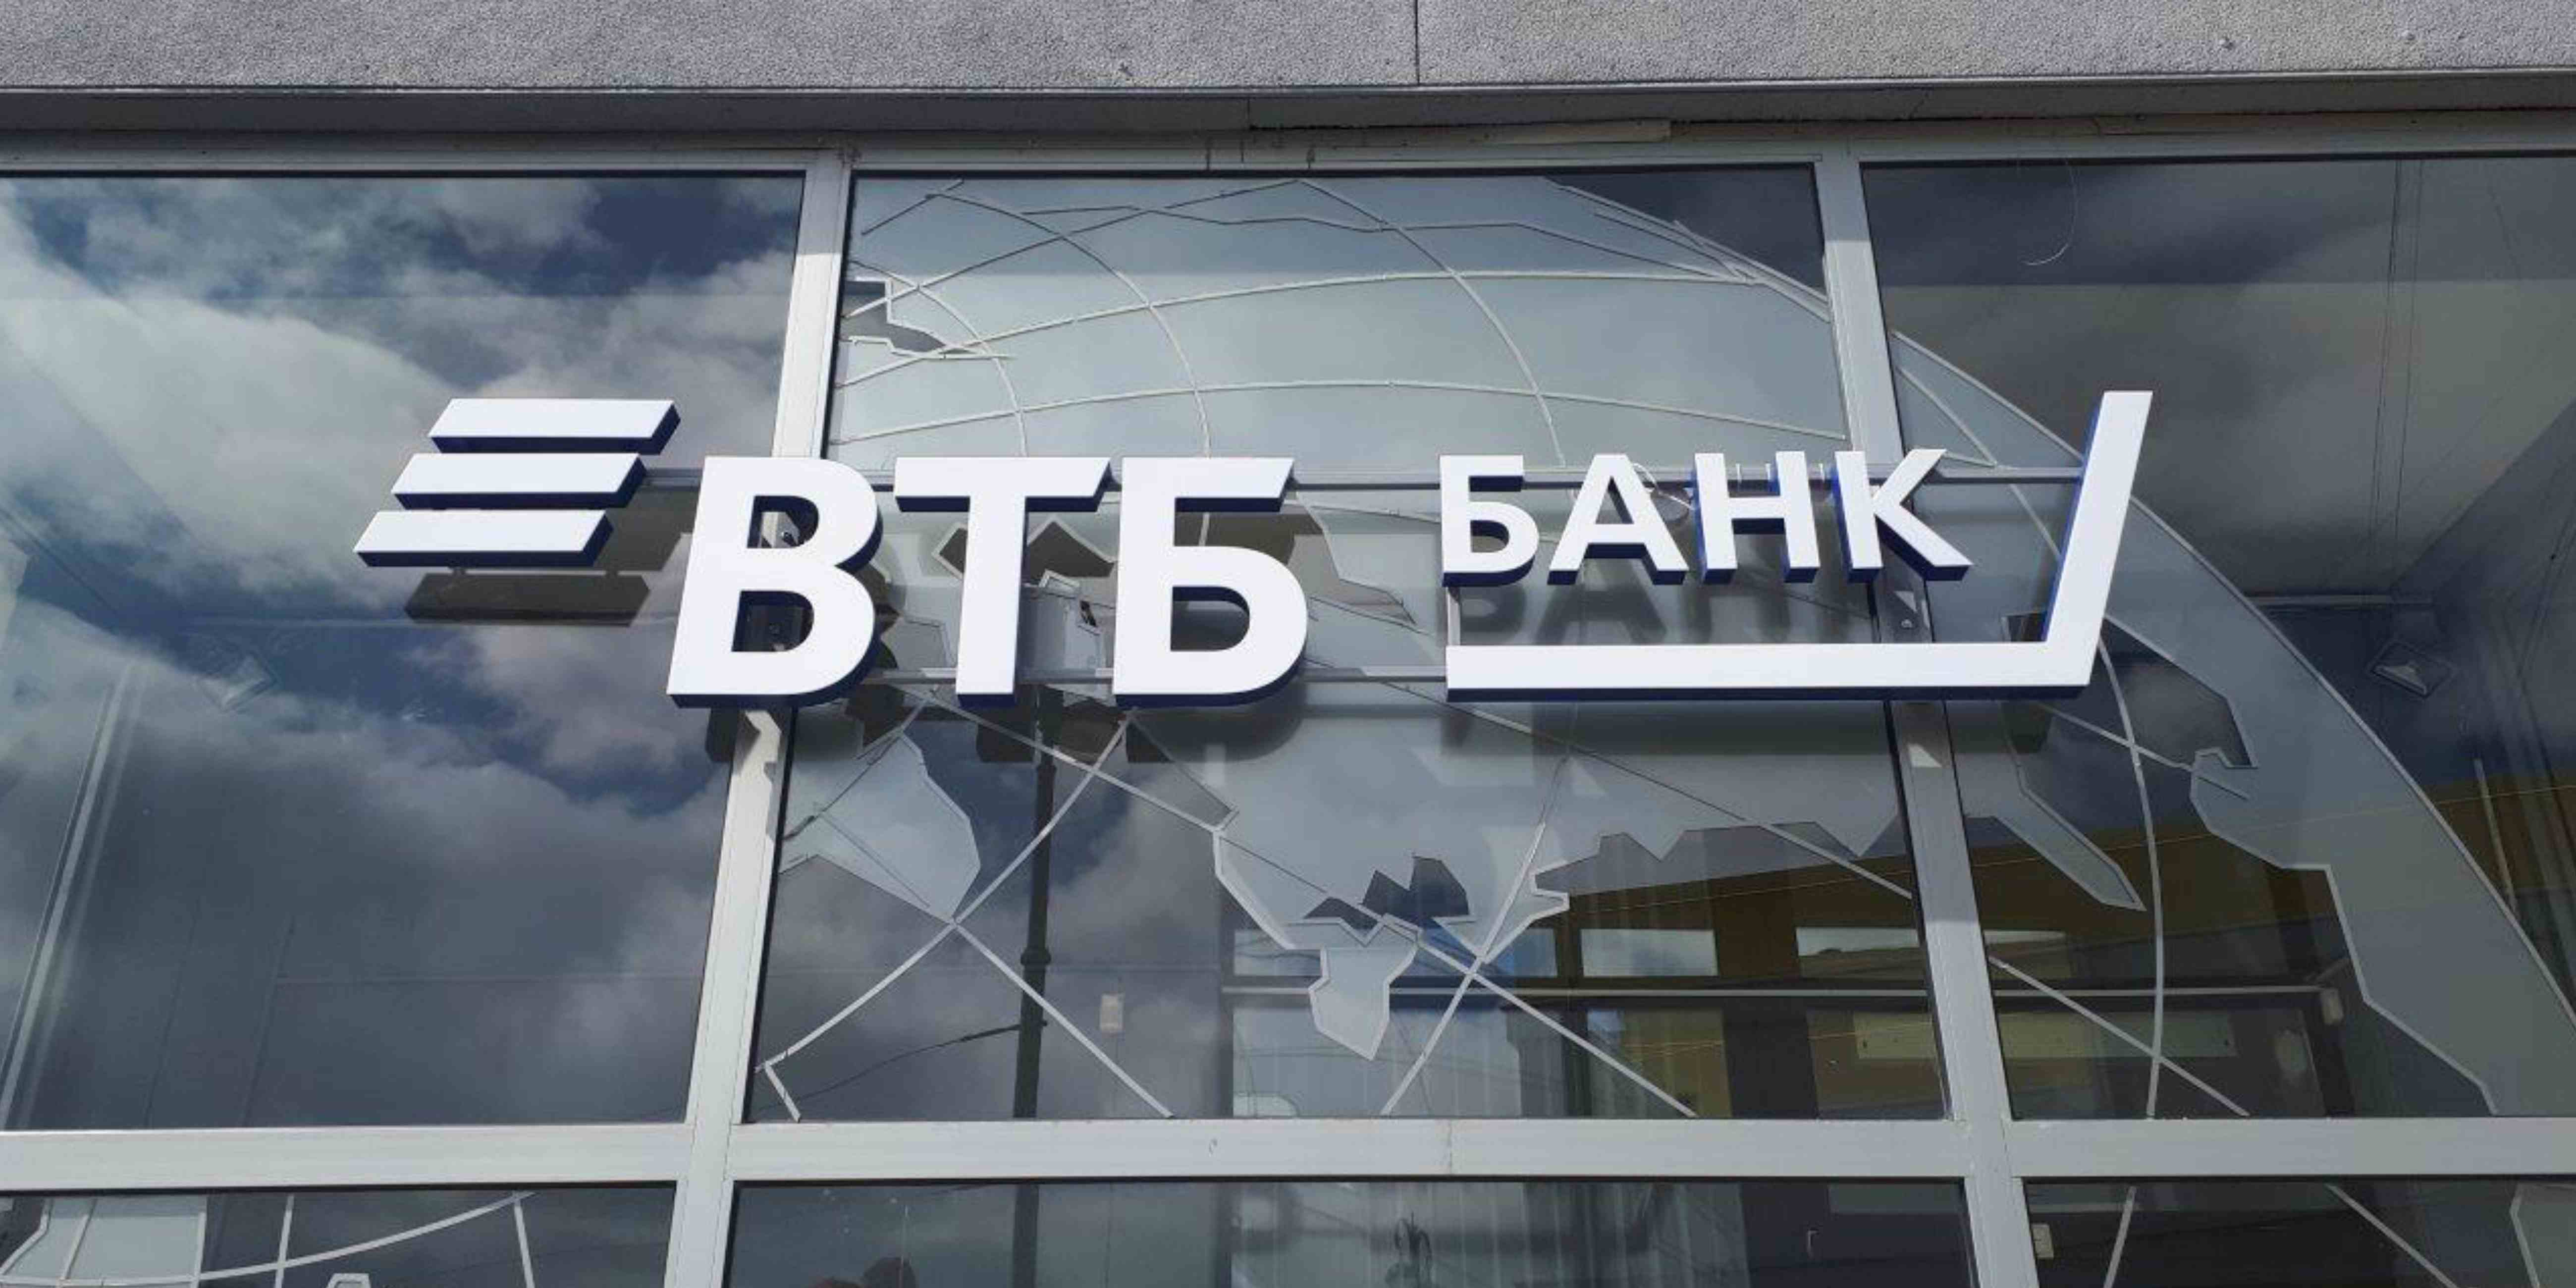 ВТБ в Нижегородской области нарастил продажи автокредитов более чем на четверть